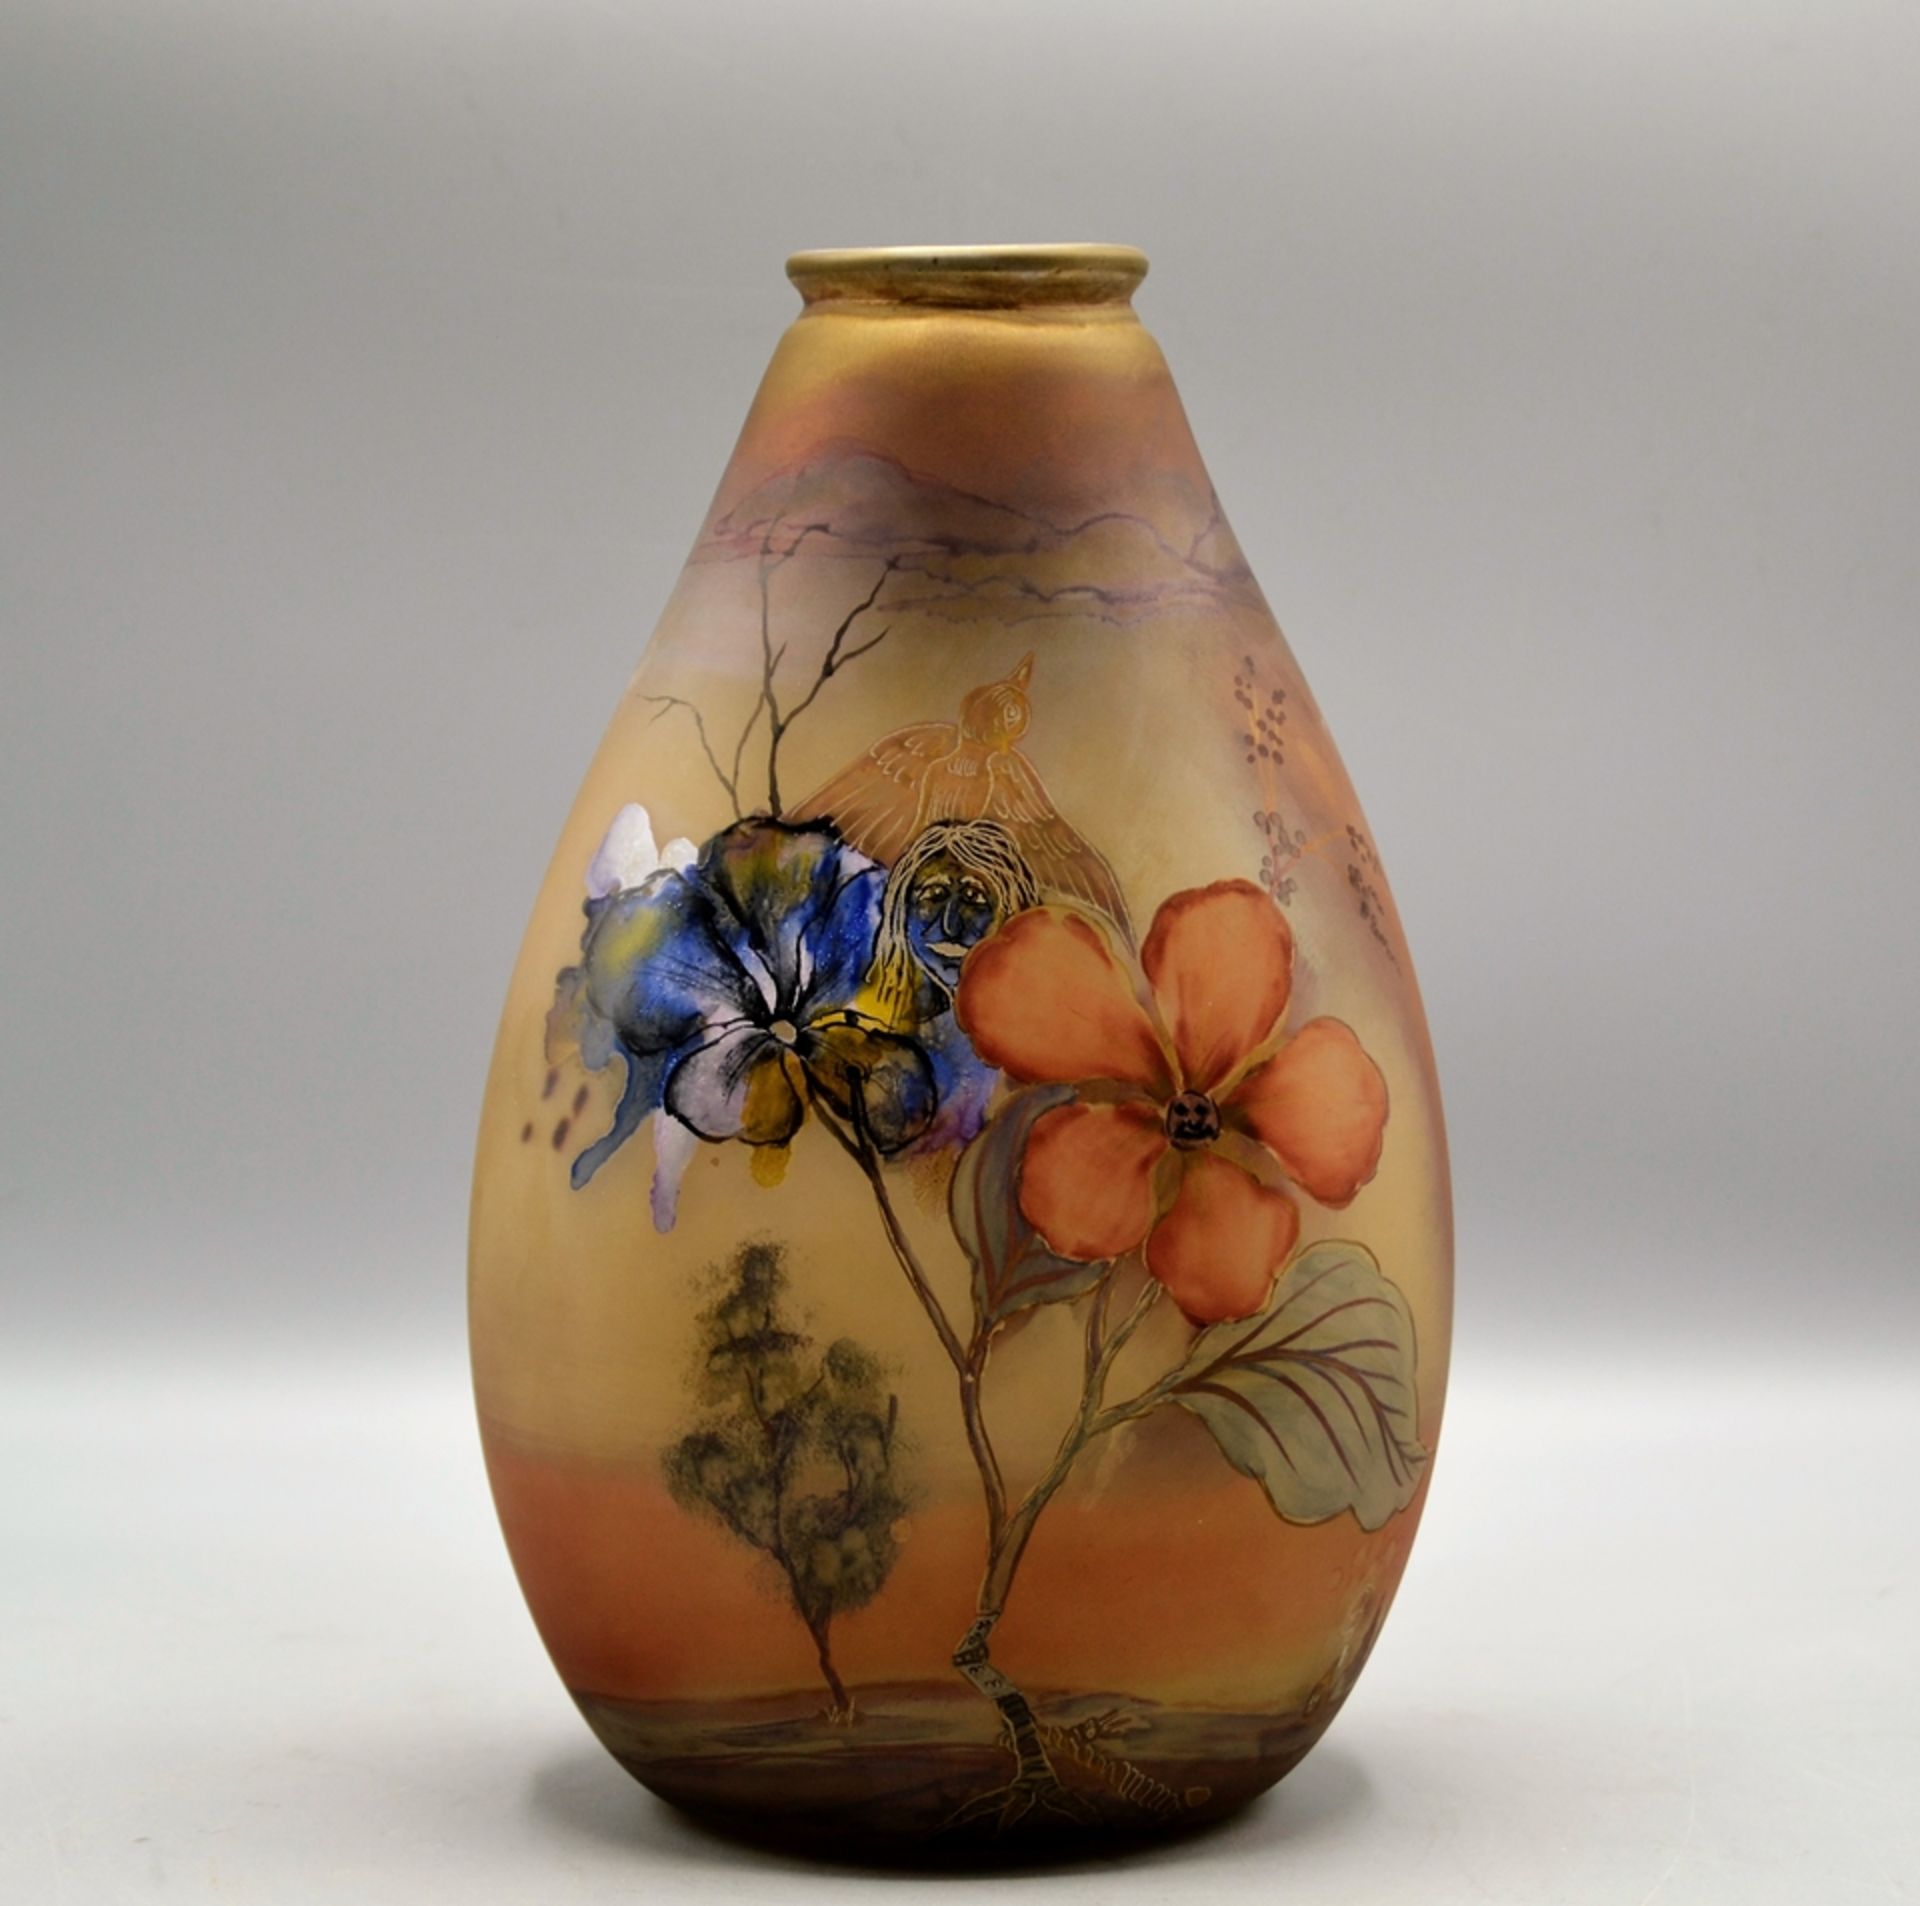 Eisch Glashütte Vase 1986, signiert u. datiert im Abriss "Eisch 86 S.S.", handbemalt mit Blumen (ei